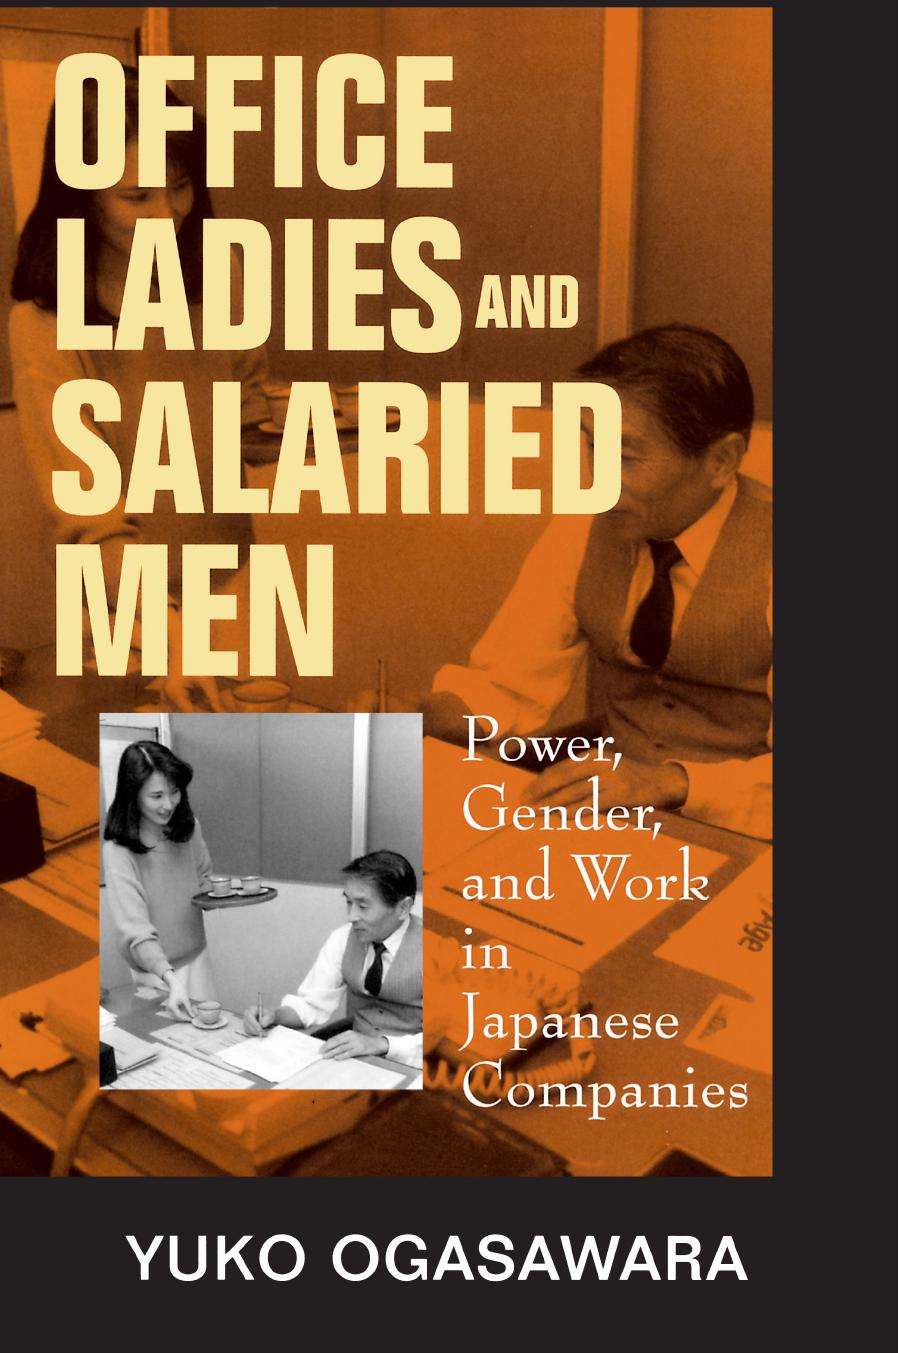 Office Ladies and Salaried Men: Power, Gender, and Work in Japanese Companies by Yuko Ogasawara